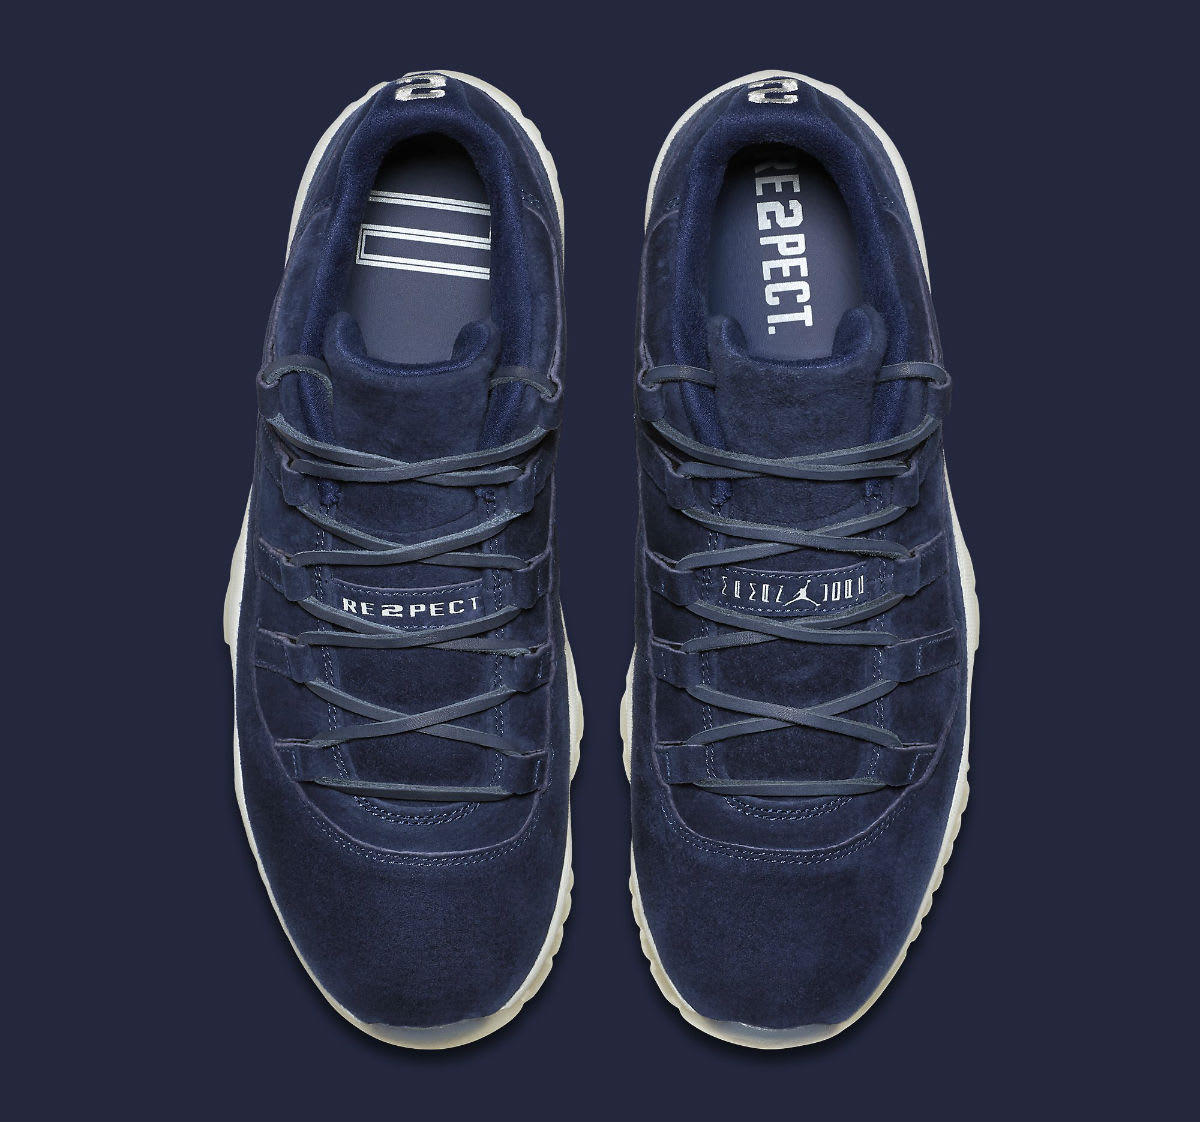 The Air Jordan 11 Low RE2PECT - Sneaker Bar Detroit